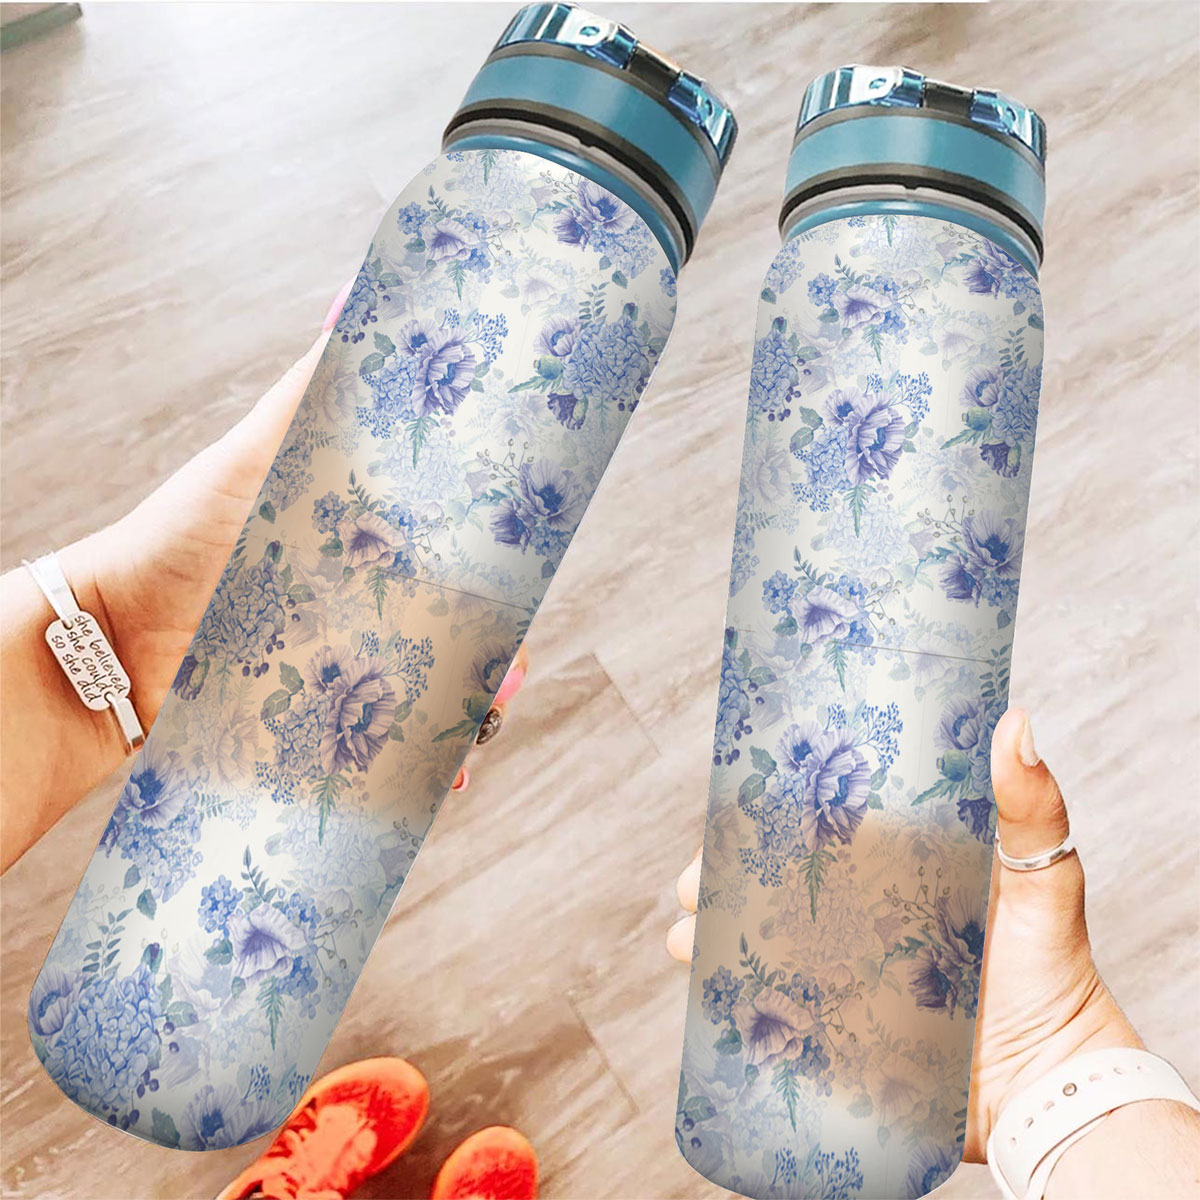 Vintage Blue Hydrangea Flowers Tracker Bottle